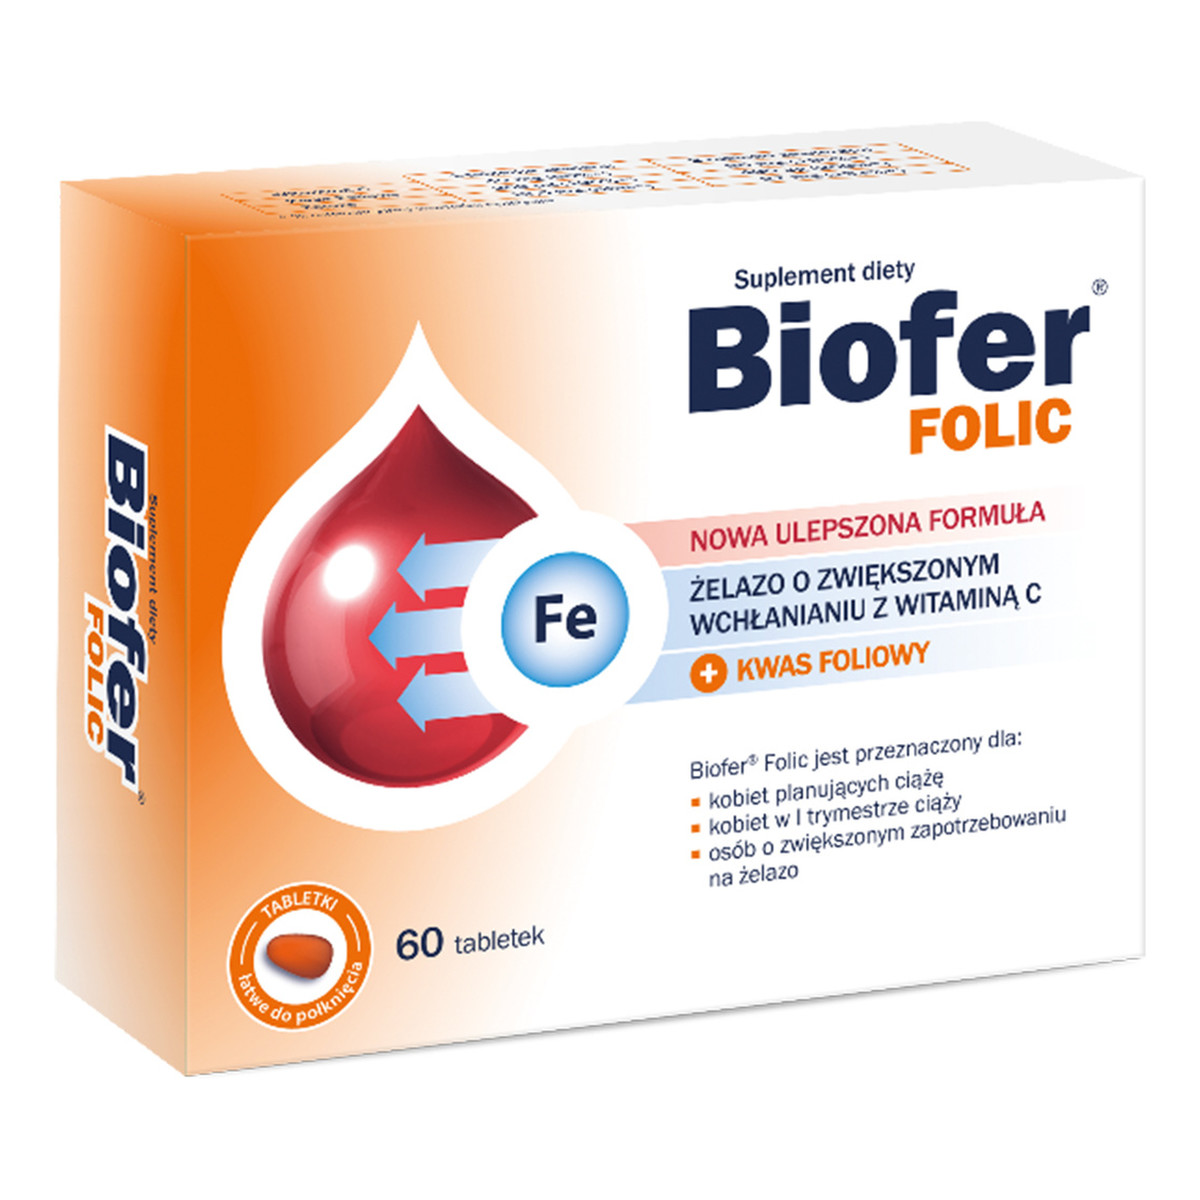 Biofer Folic żelazo o zwiększonym wchłanianiu z witaminą C i kwasem foliowym 60 tabletek